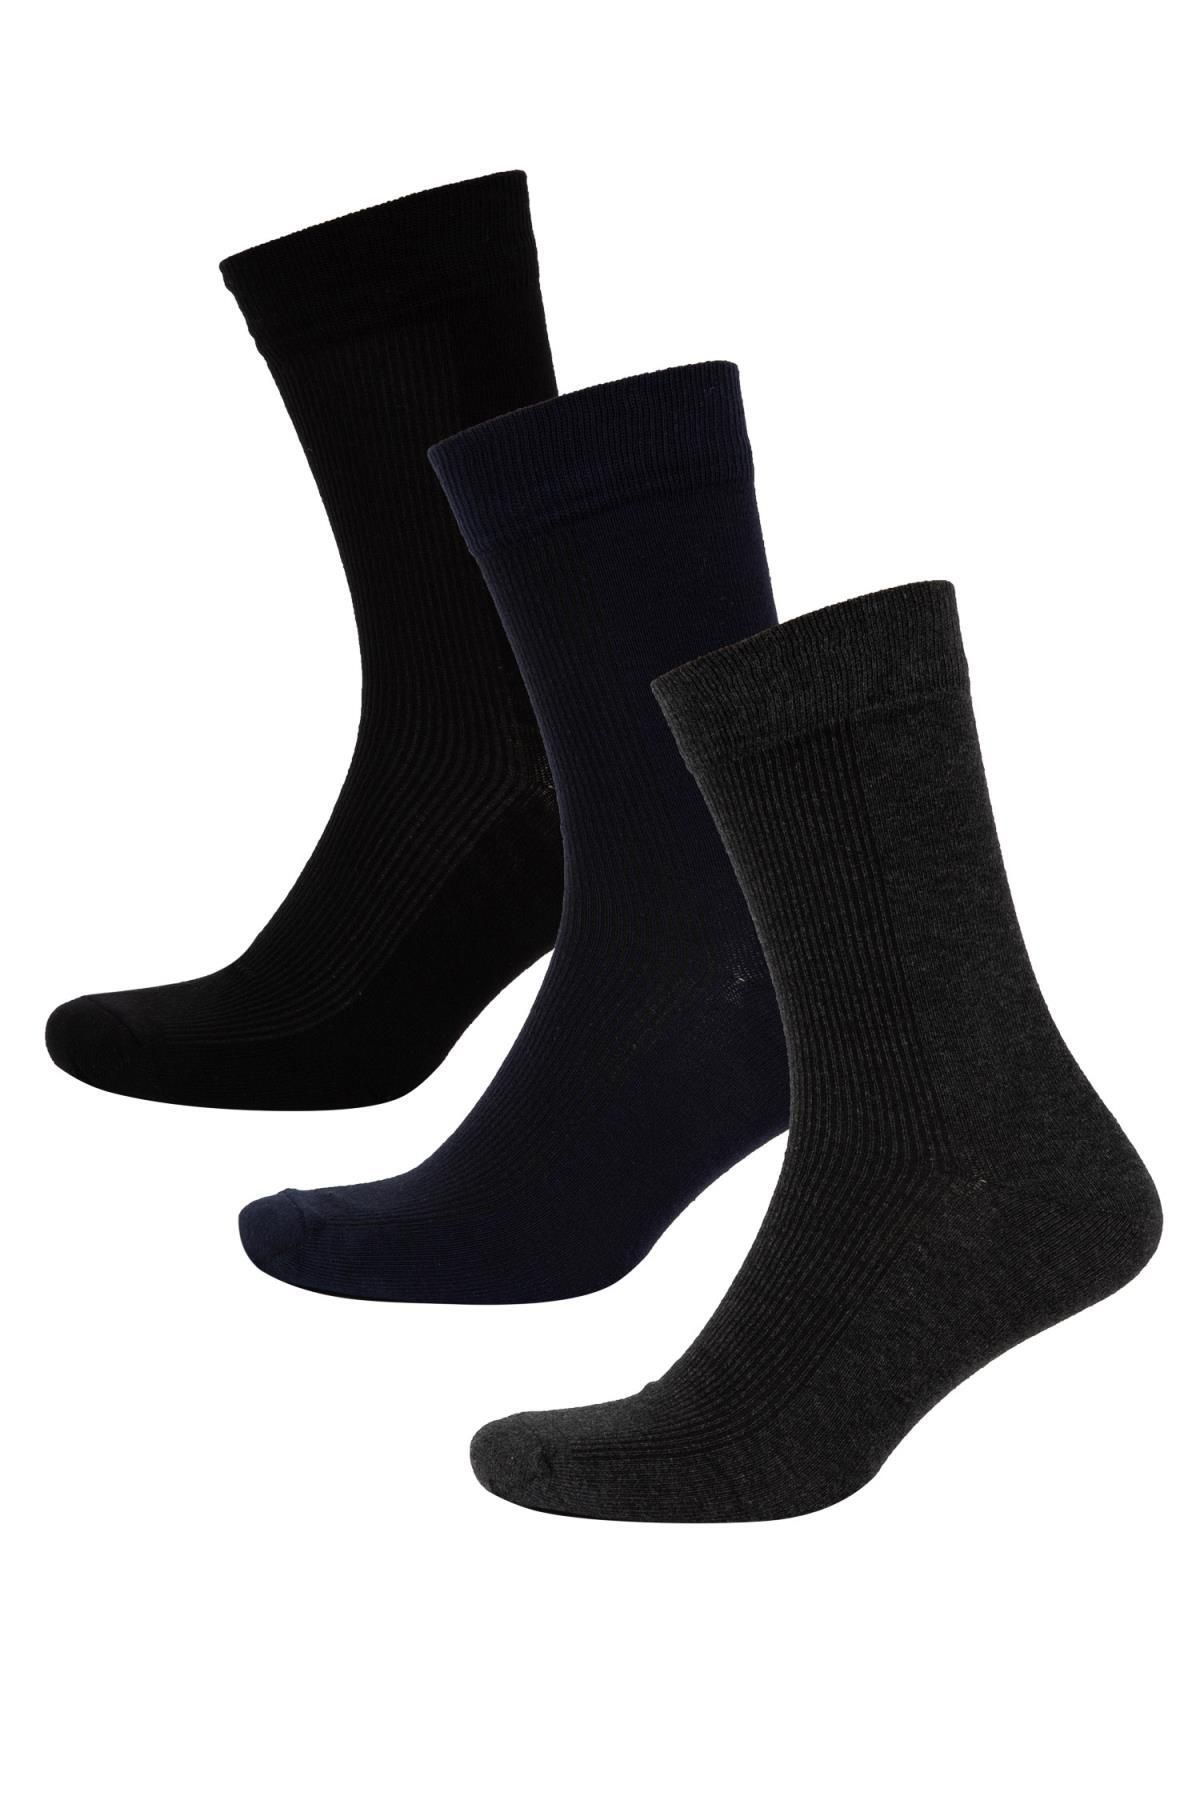 Defacto Erkek 3lü Pamuklu Uzun Çorap C0171axns